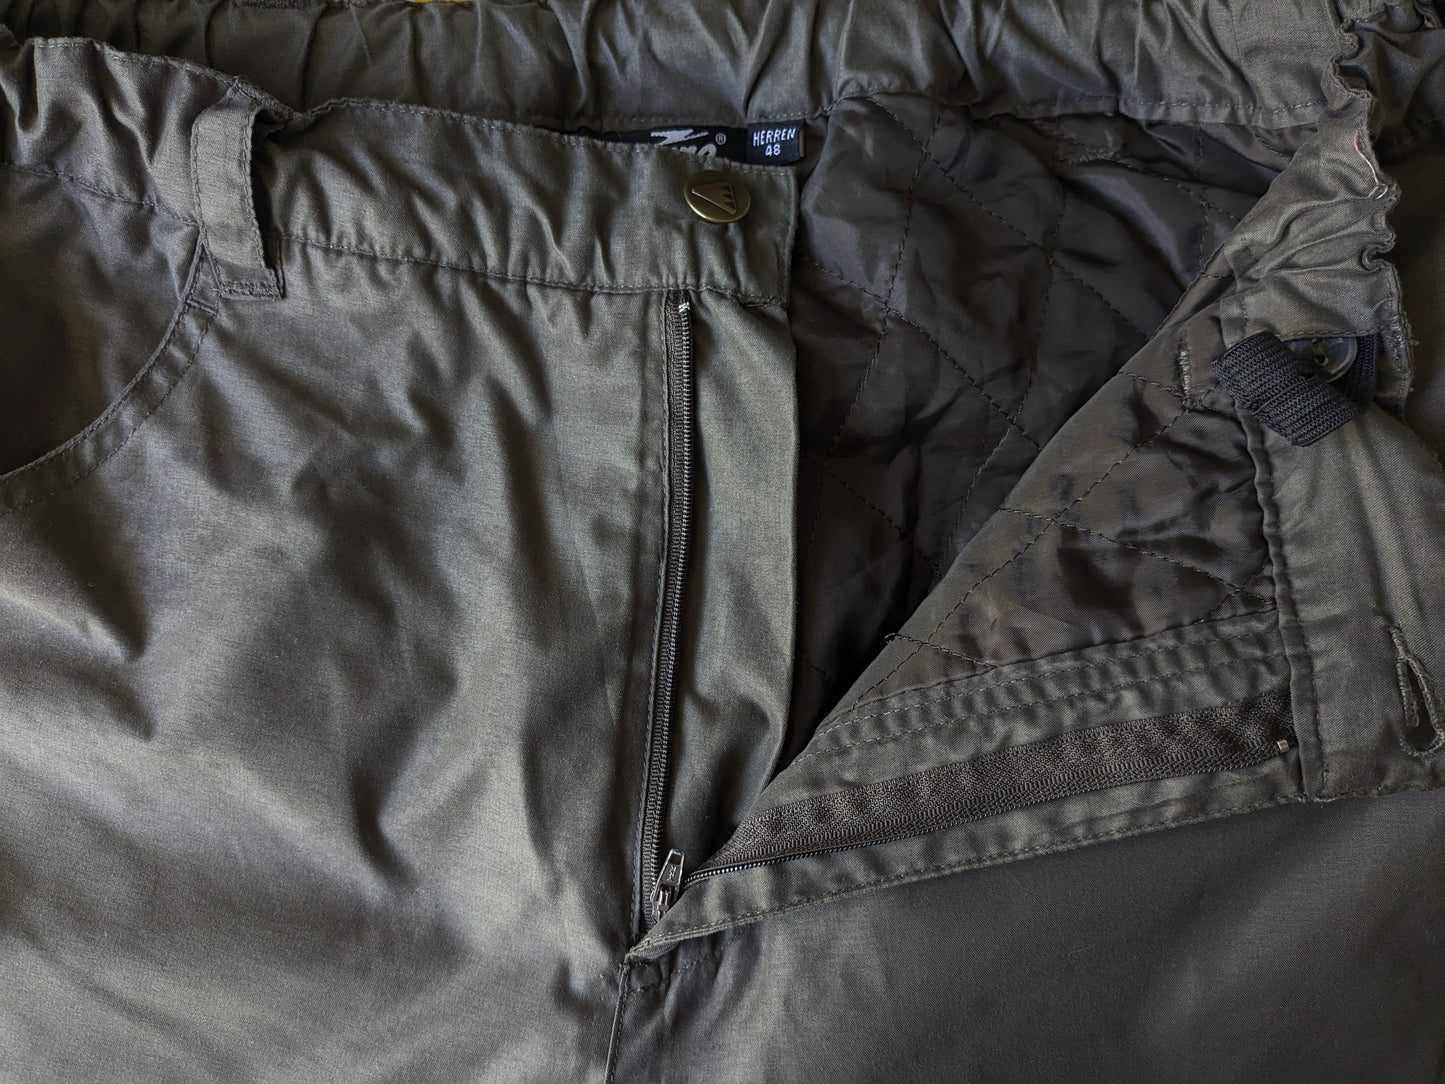 Crane Sports Thermo / Pantalon doublé. Taille réglable. Vert coloré. Taille 48 / S.